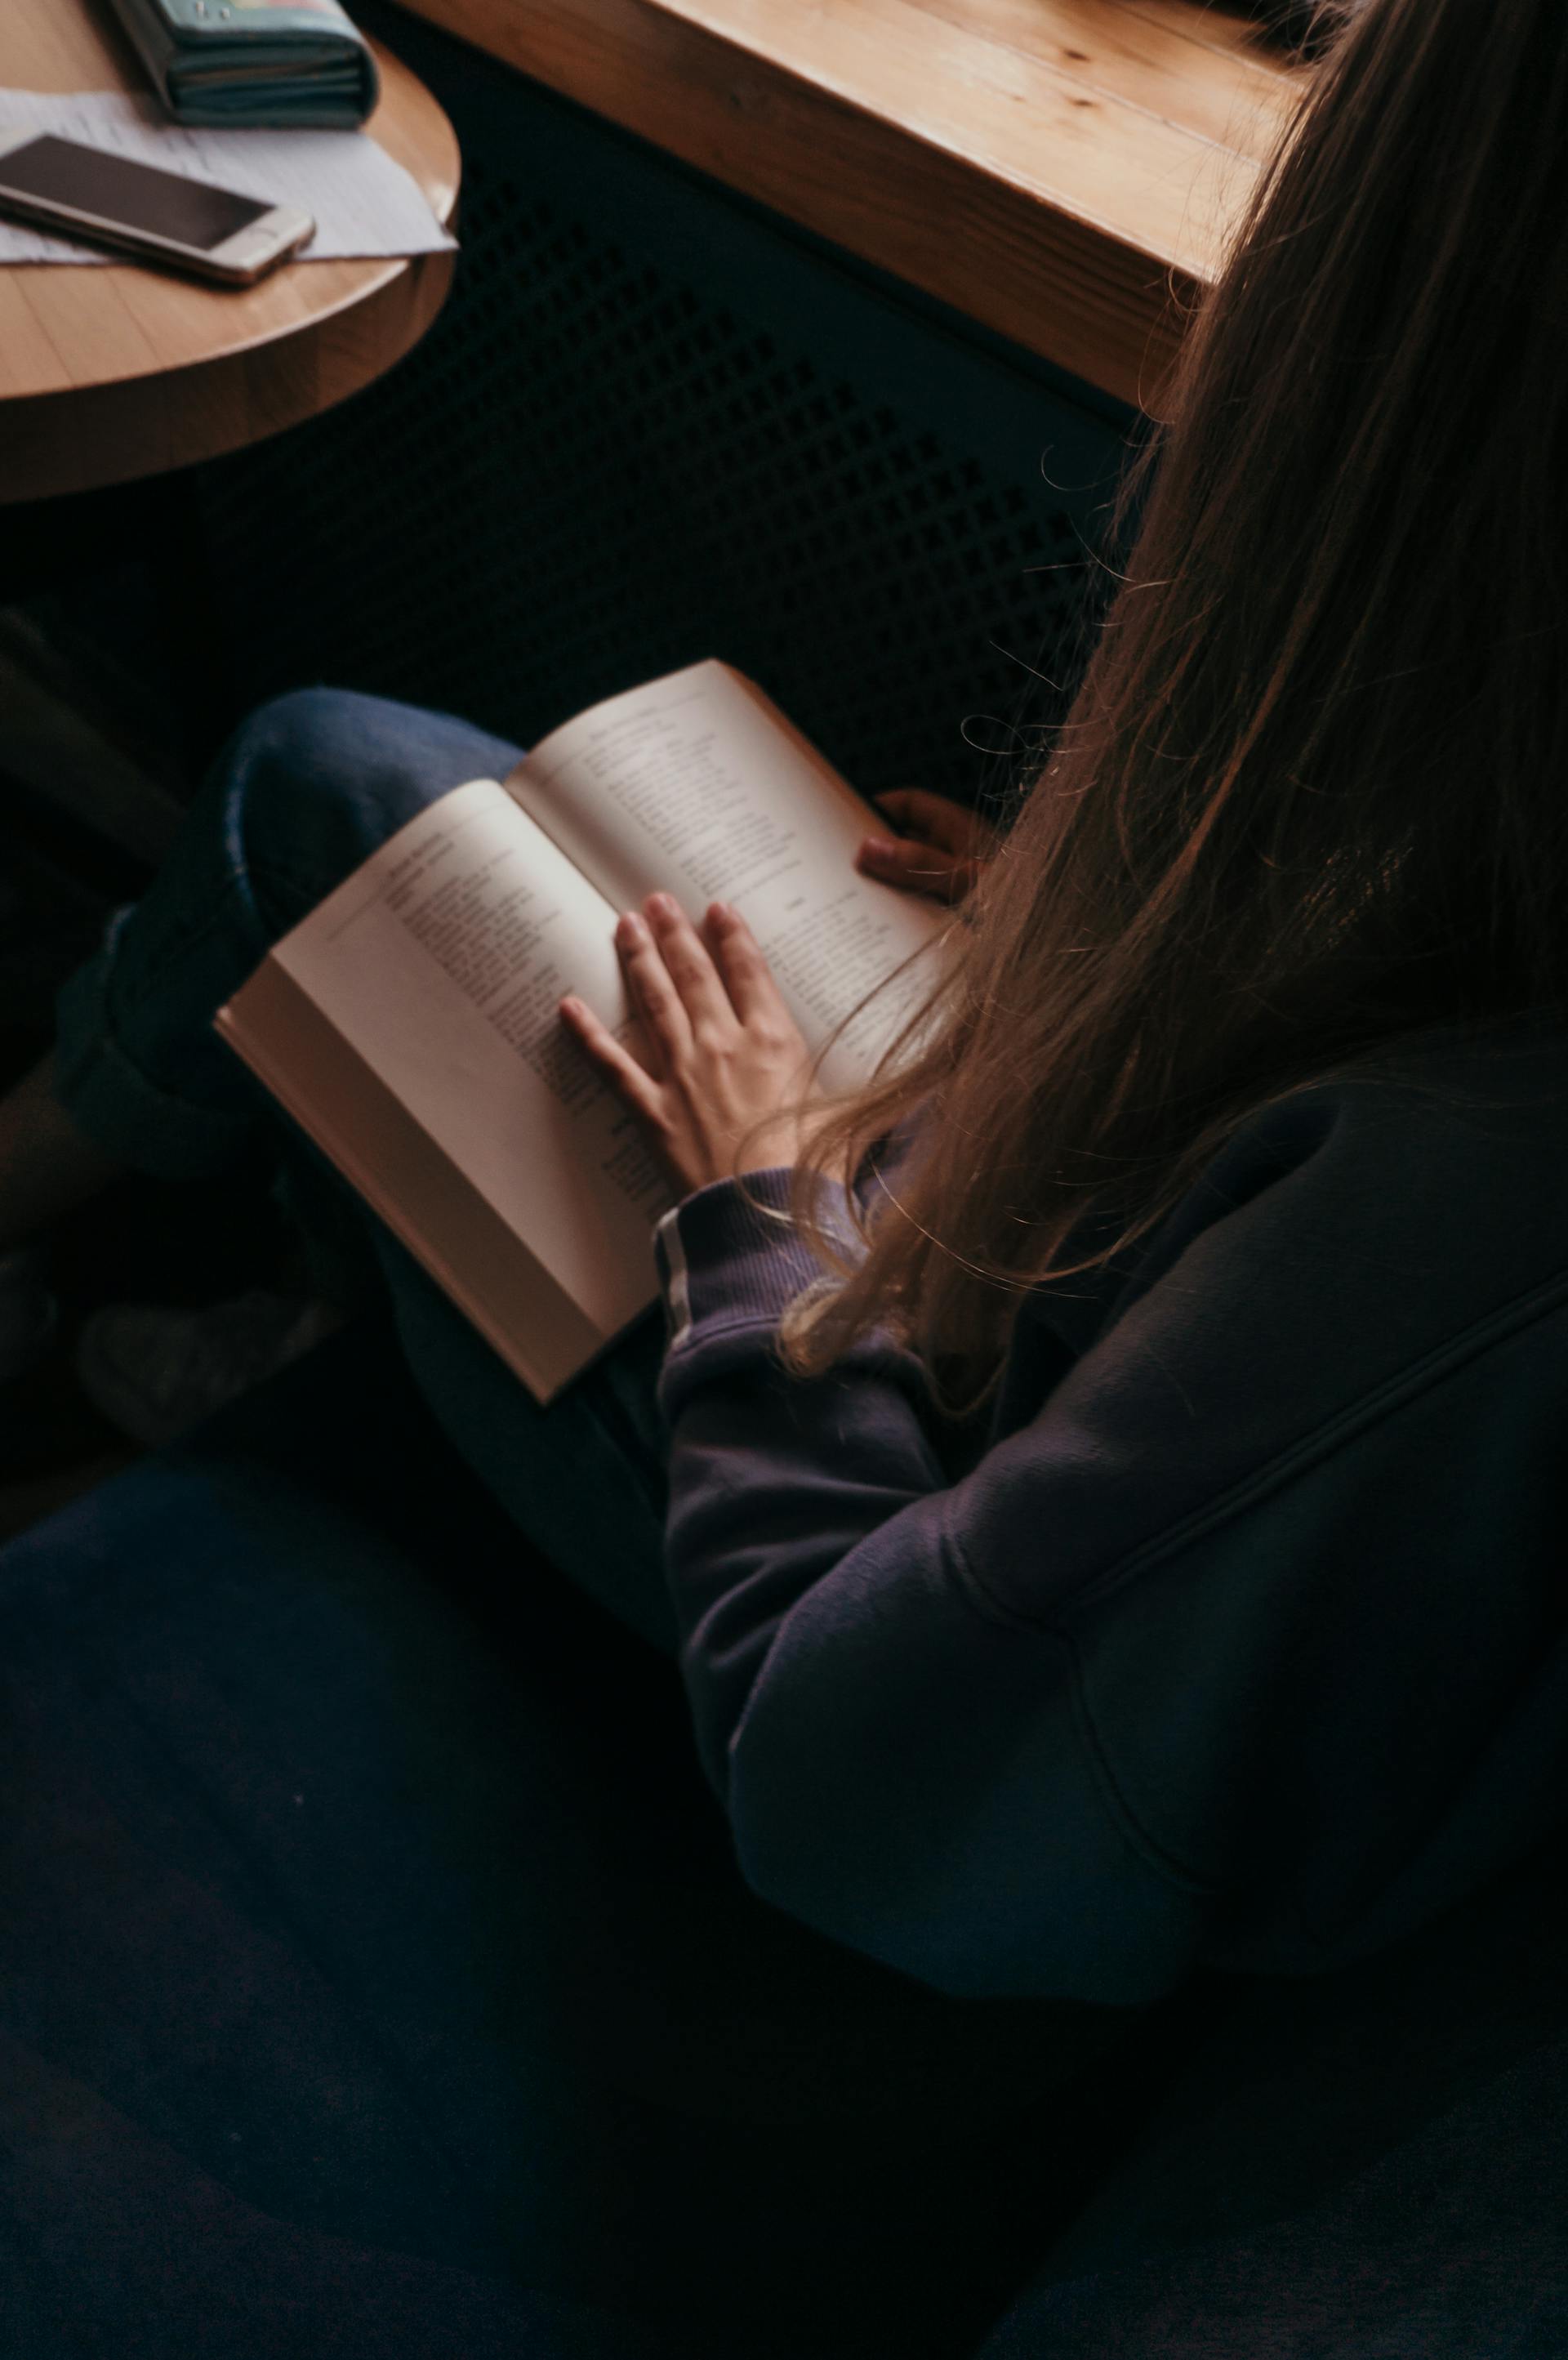 Eine Person, die ein Buch liest | Quelle: Pexels